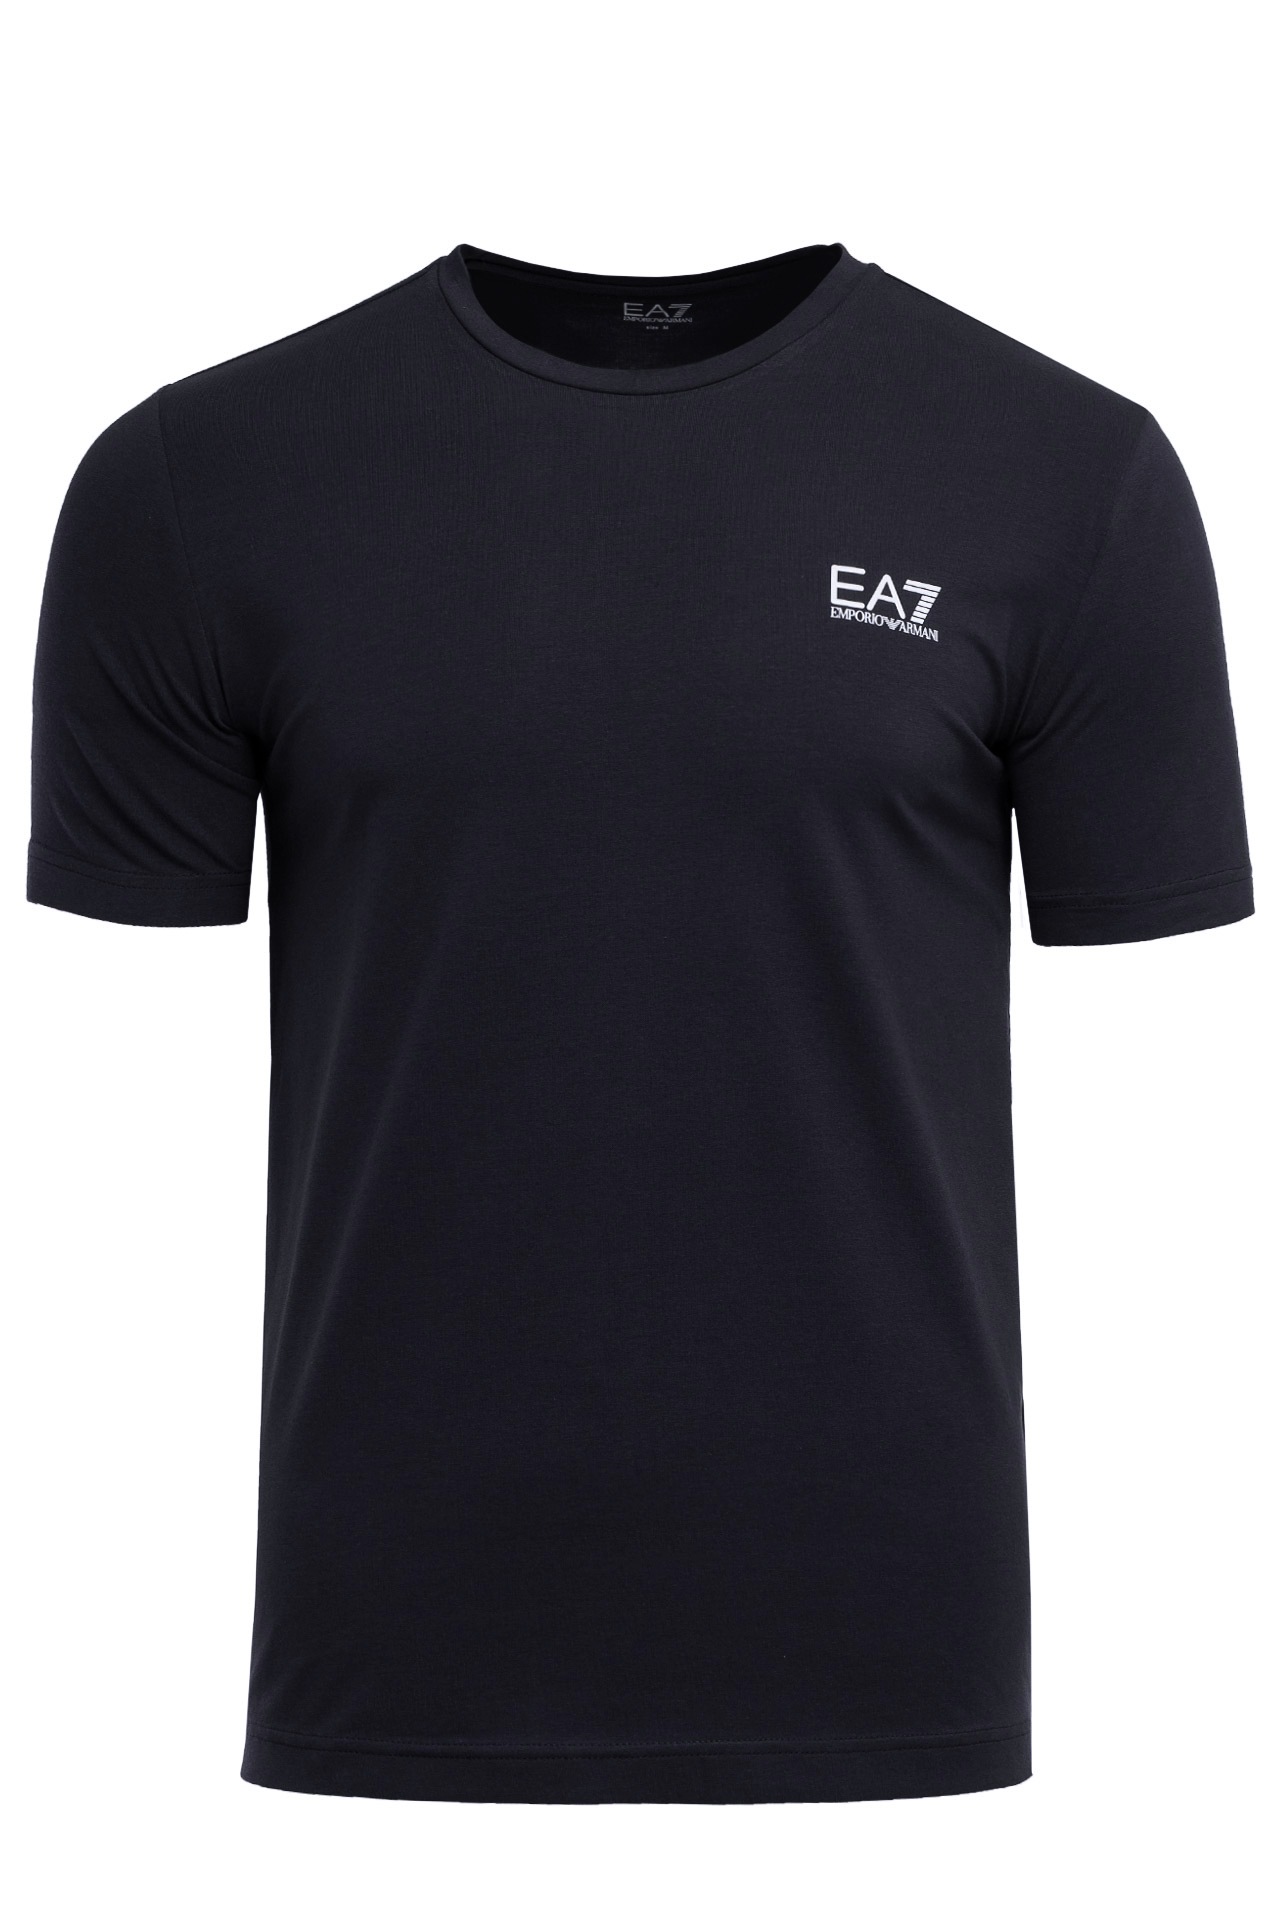 Koszulka męska EA7 Emporio Armani 8NPT52-PJM5Z-1578